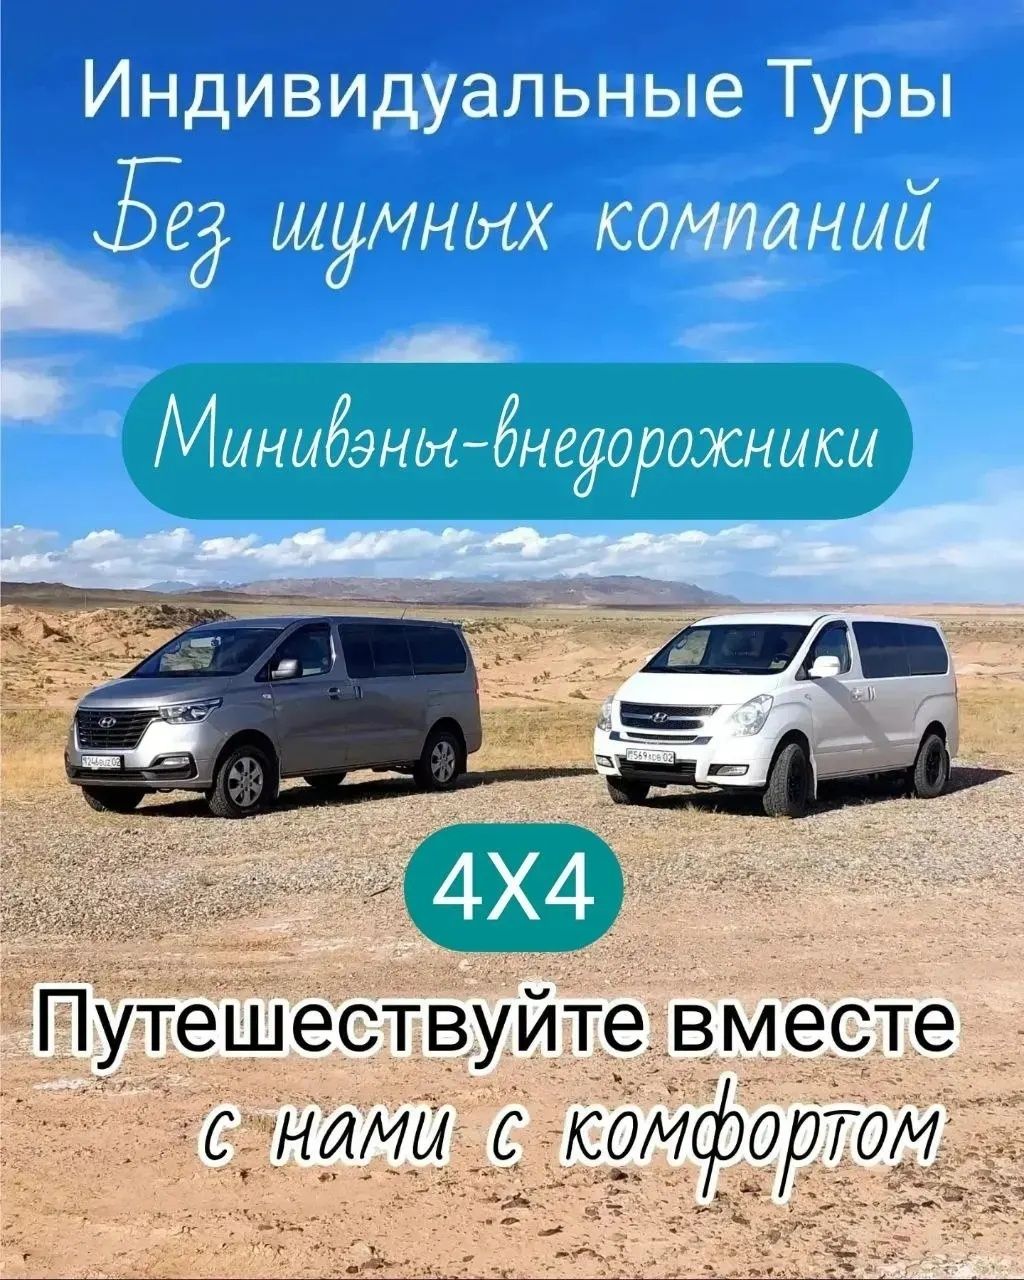 Экскурсии по уникальным местам Алматинской области.